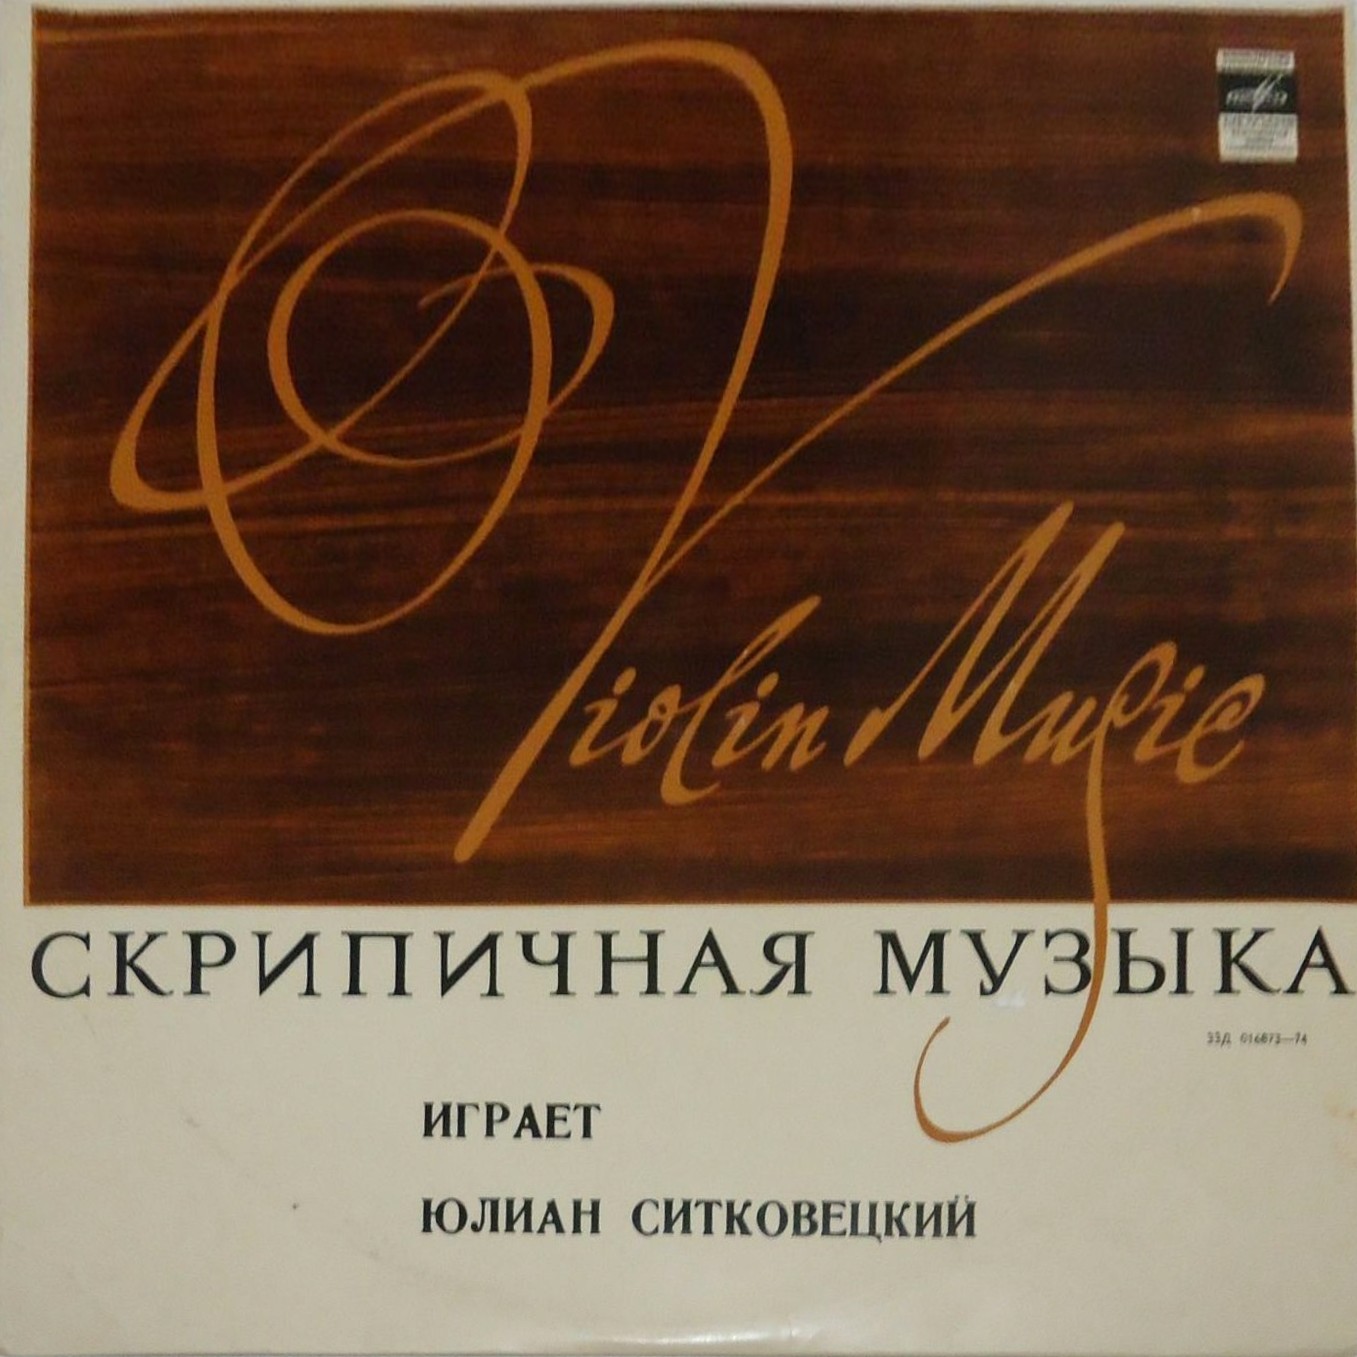 Юлиан Ситковецкий (скрипка)